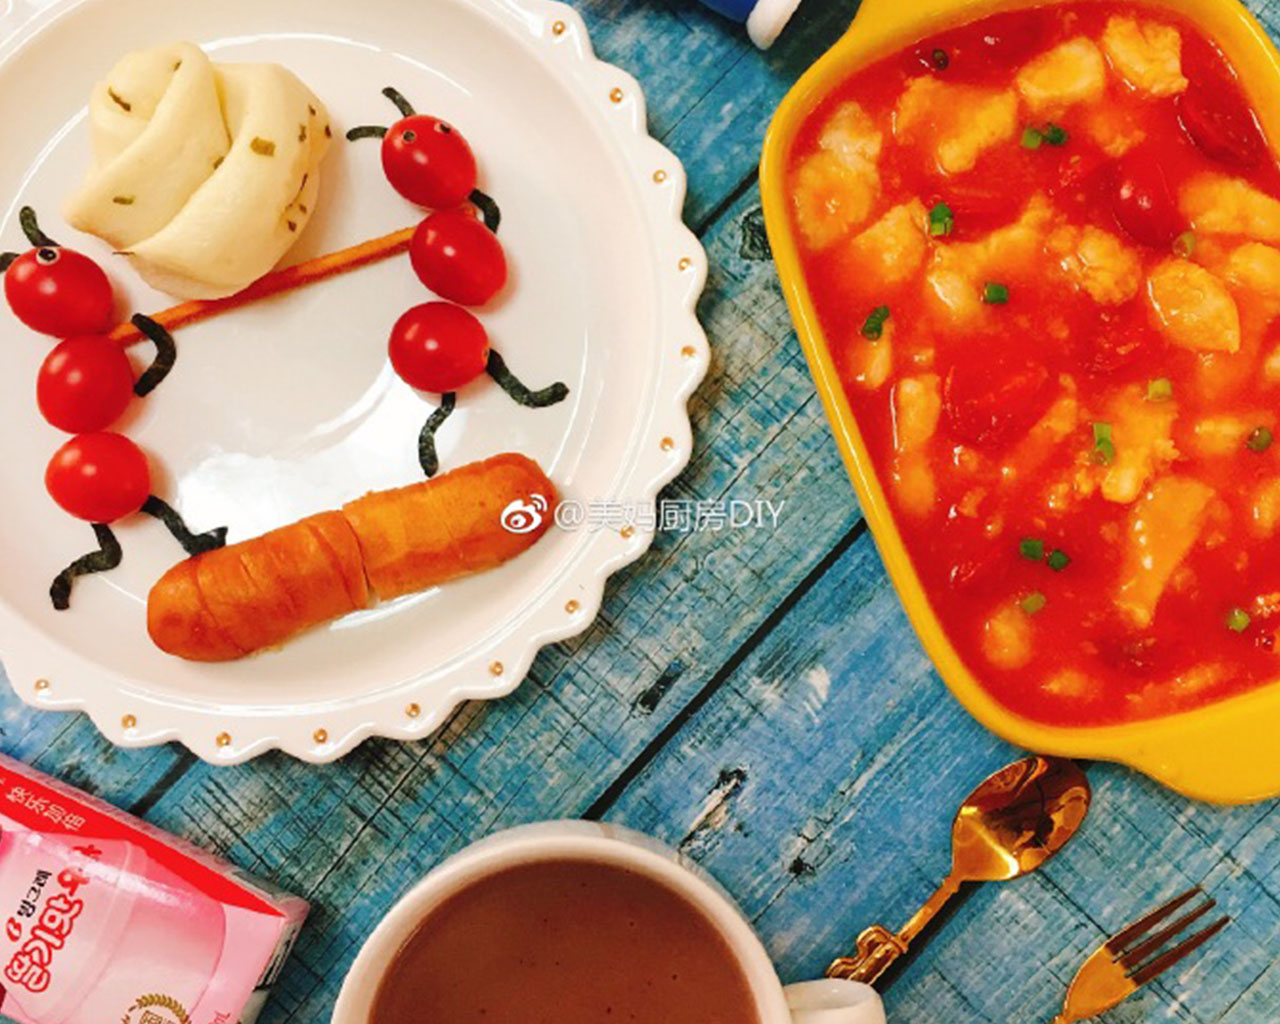 番茄龙利鱼+蚂蚁拼盘+红豆薏米糊